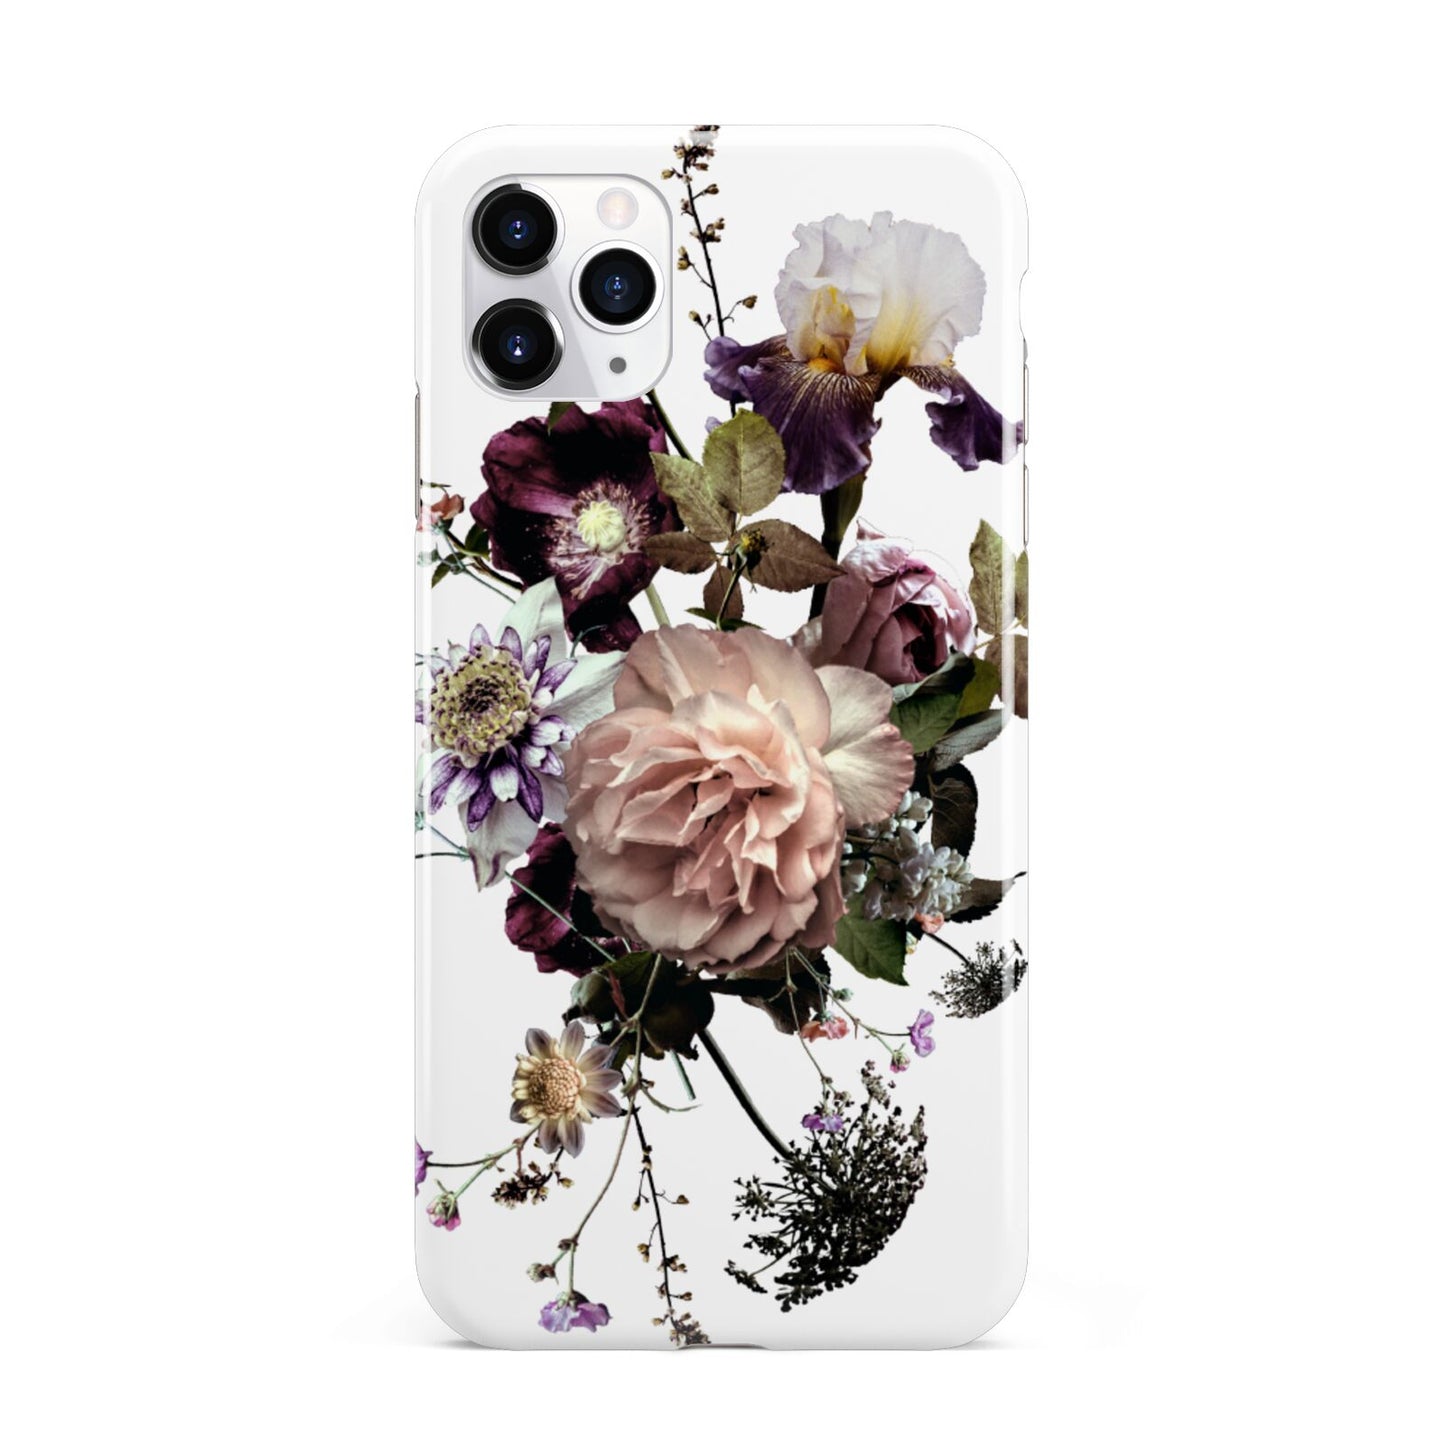 Vintage Flowers iPhone 11 Pro Max 3D Tough Case